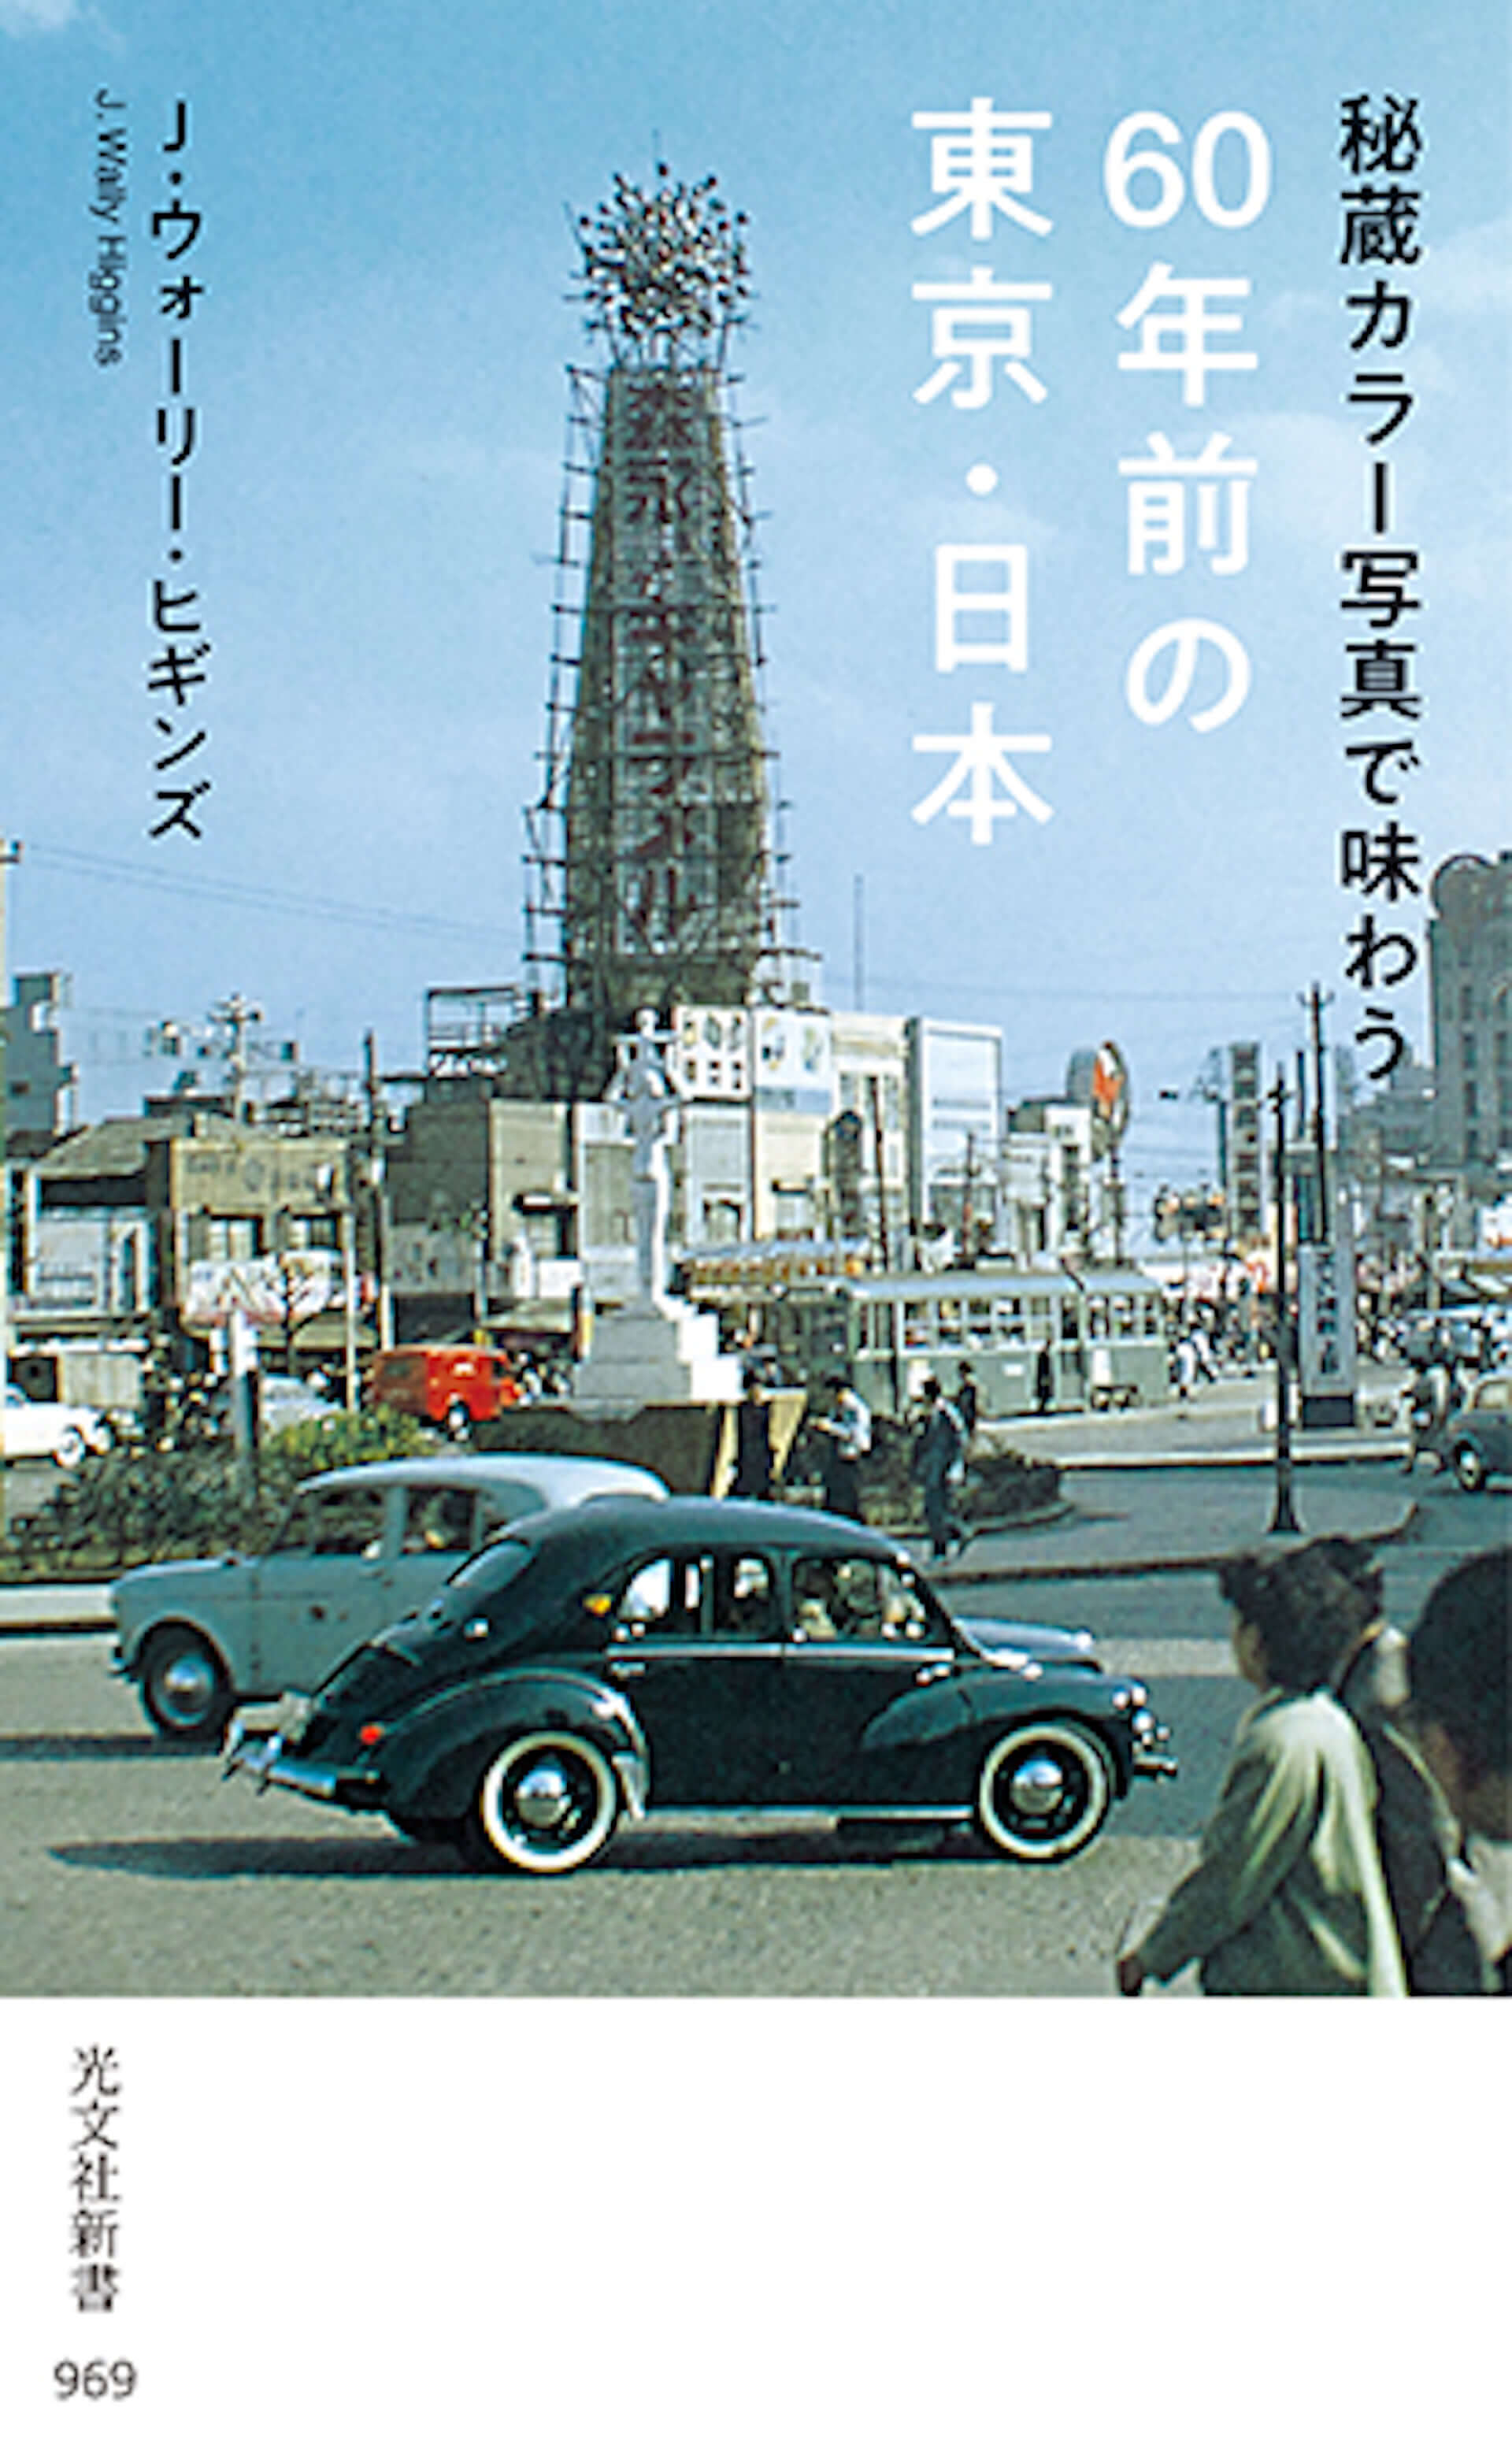 昭和30年代の風景をカラー写真で 秘蔵カラー写真で味わう60年前の東京 日本 が累計4万部突破 収録内容が一部公開 Qetic